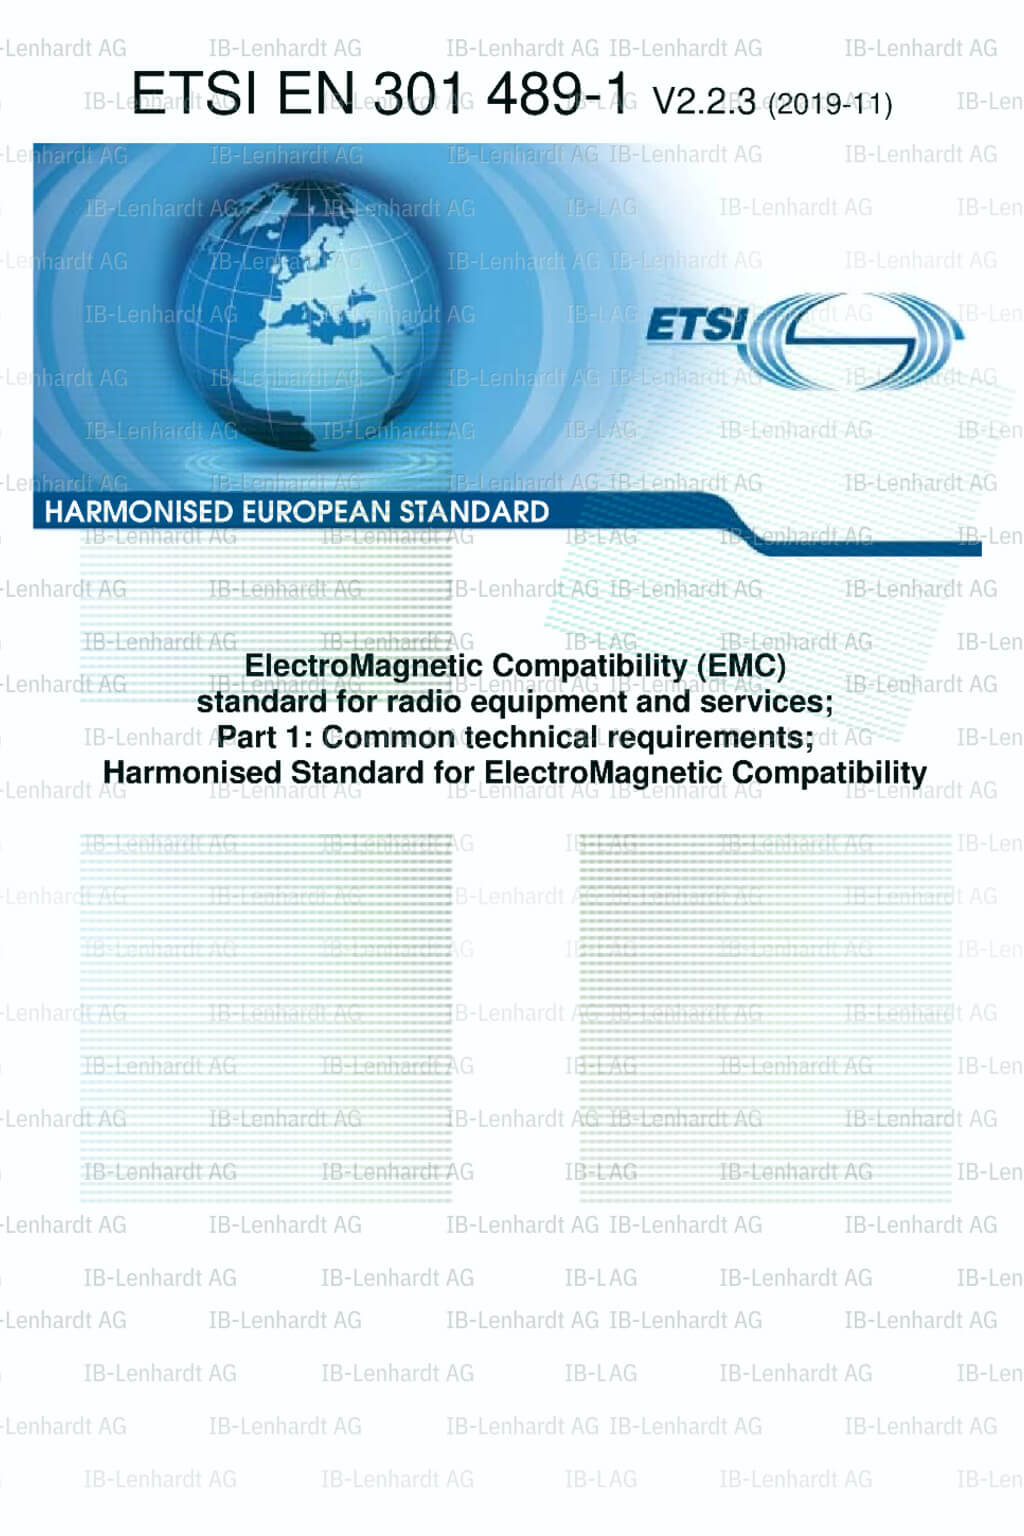 ETSI EN 301 489-01 V2.2.3